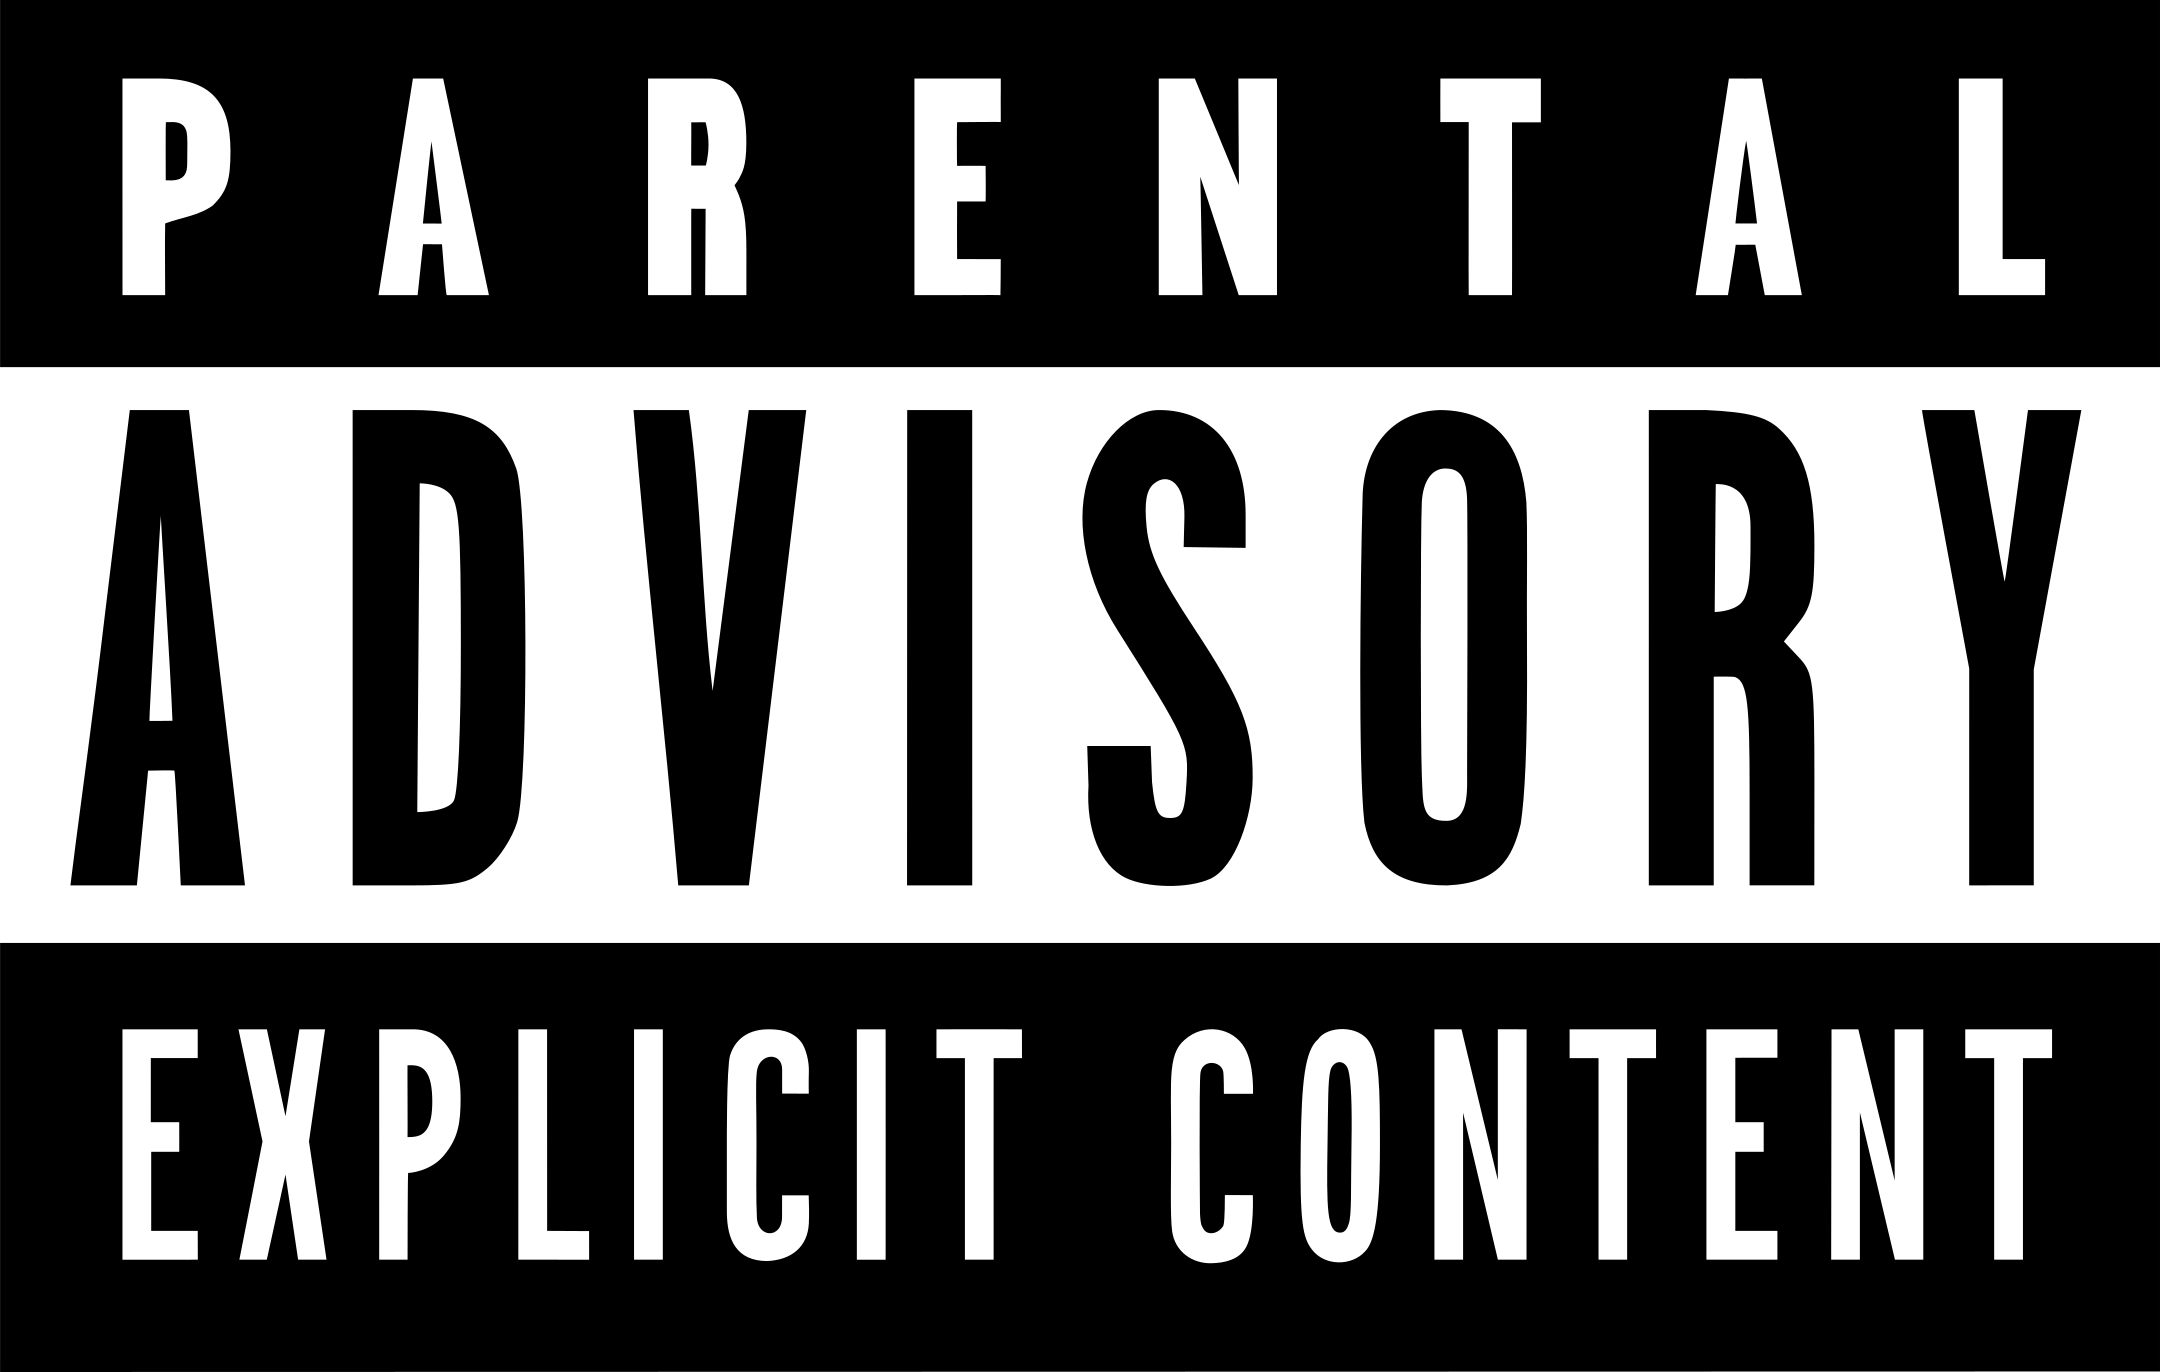 parental advisory explicit content logo 1 - Parental Advisory Explicit Content Logo